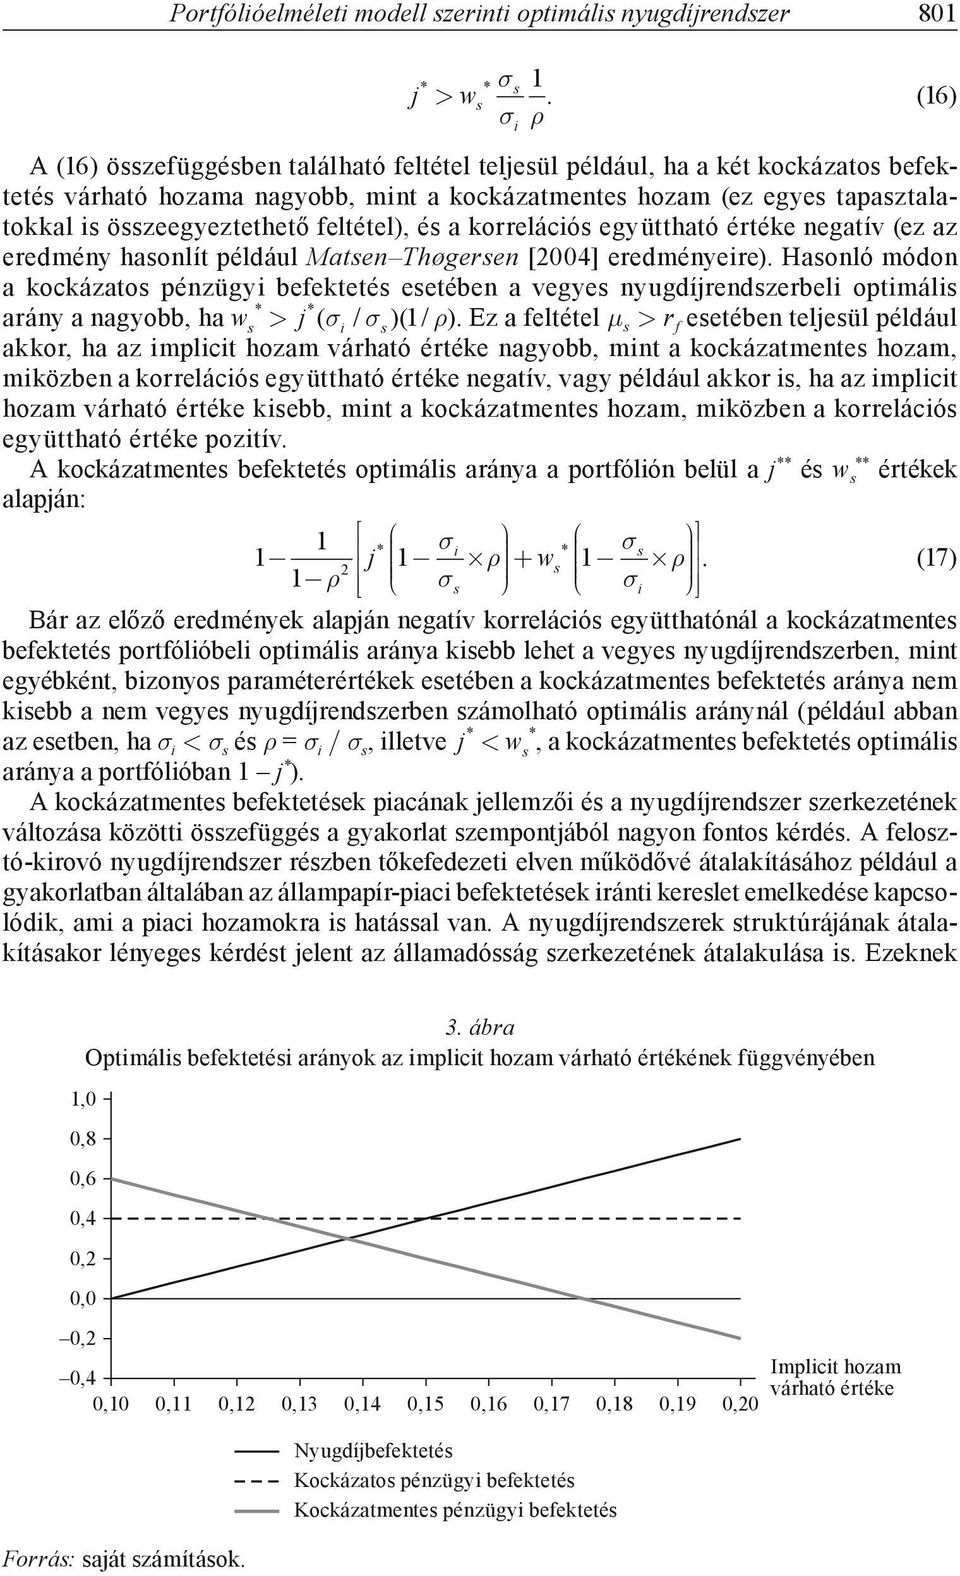 korrelácó együttható értéke negatív (ez az eredmény haonlít például Maten Thøgeren [004] eredményere).